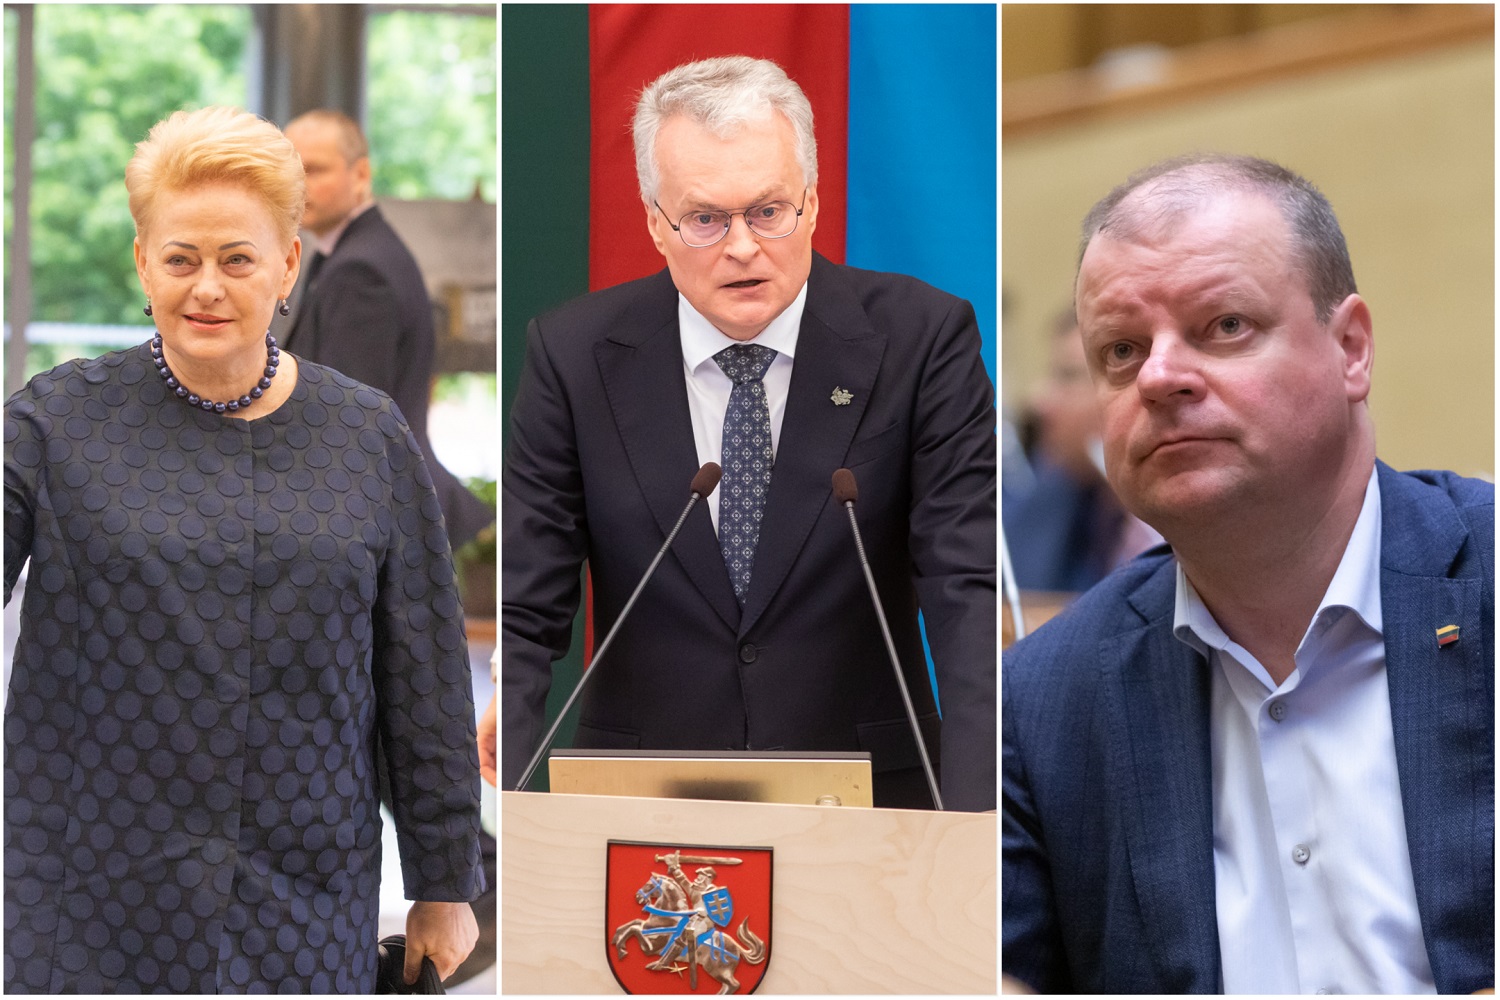 Reitingai: visuomenė labiausiai pasitiki G. Nausėda, S. Skverneliu ir D. Grybauskaite